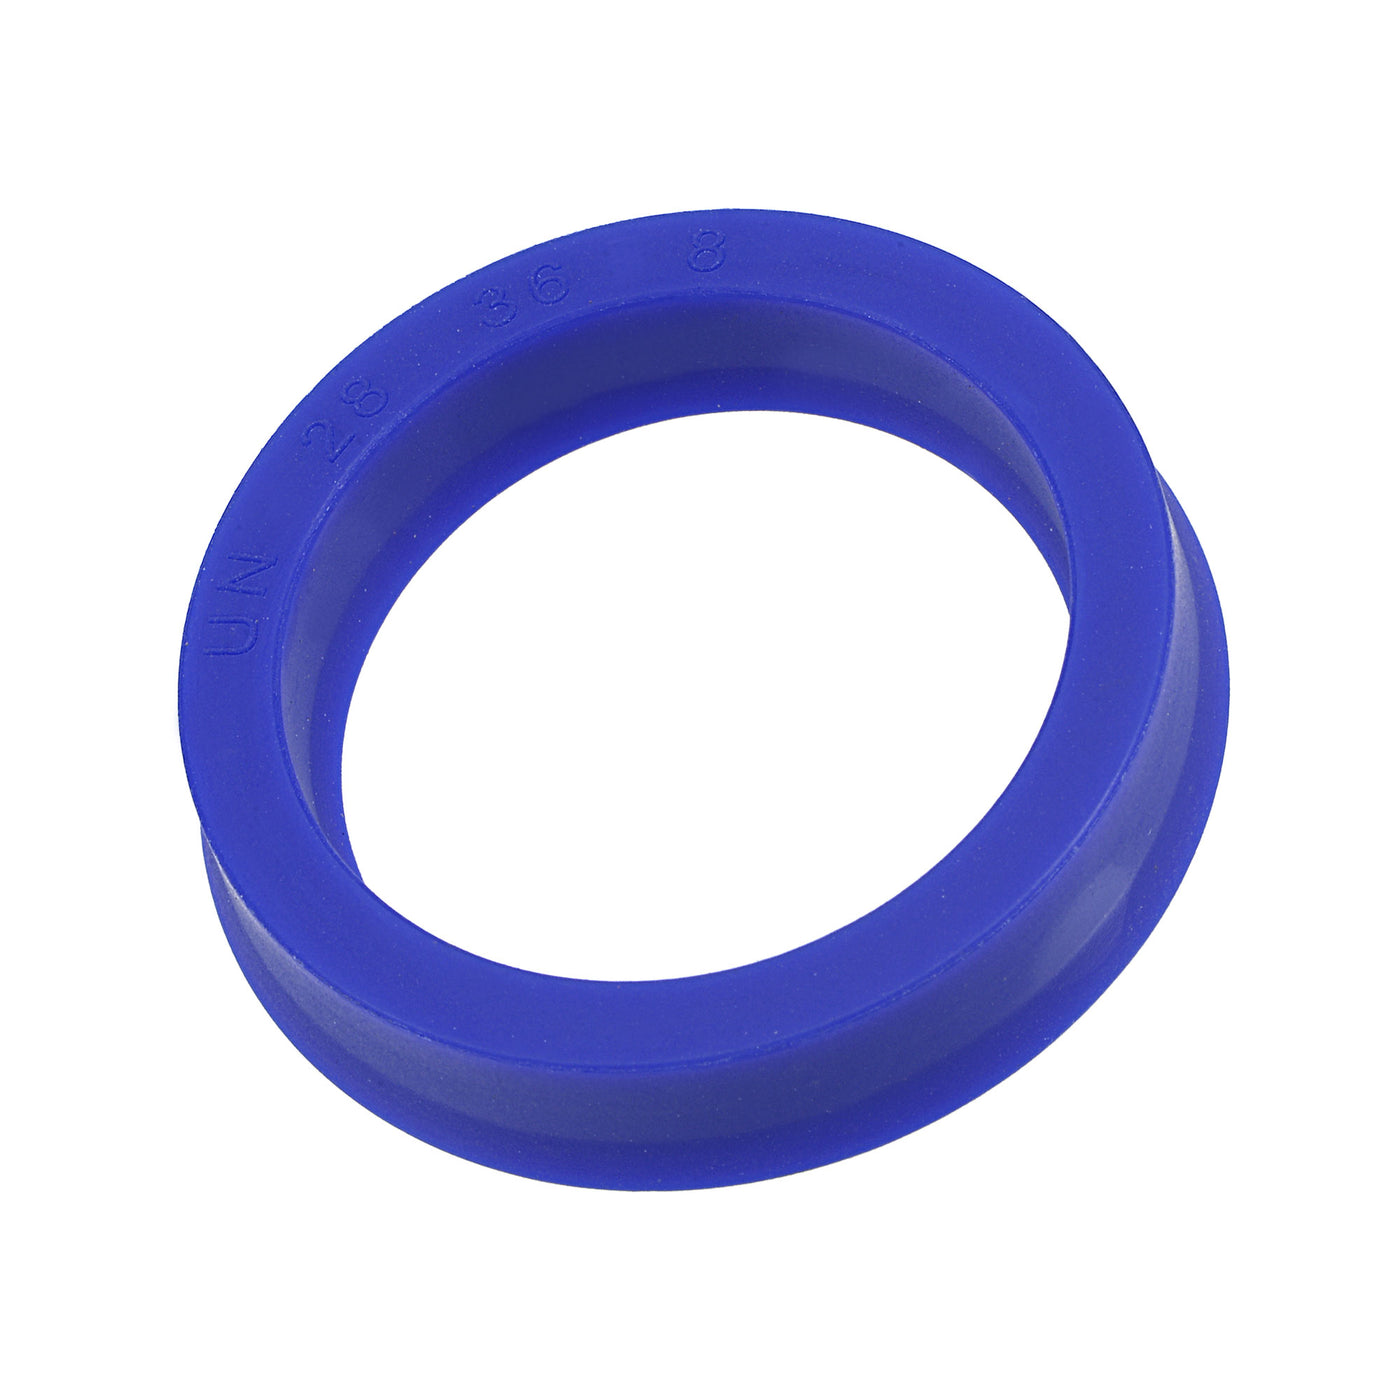 Harfington UN Radial Shaft Seal 28mm ID x 36mm OD x 8mm Width PU Oil Seal, Blue Pack of 5